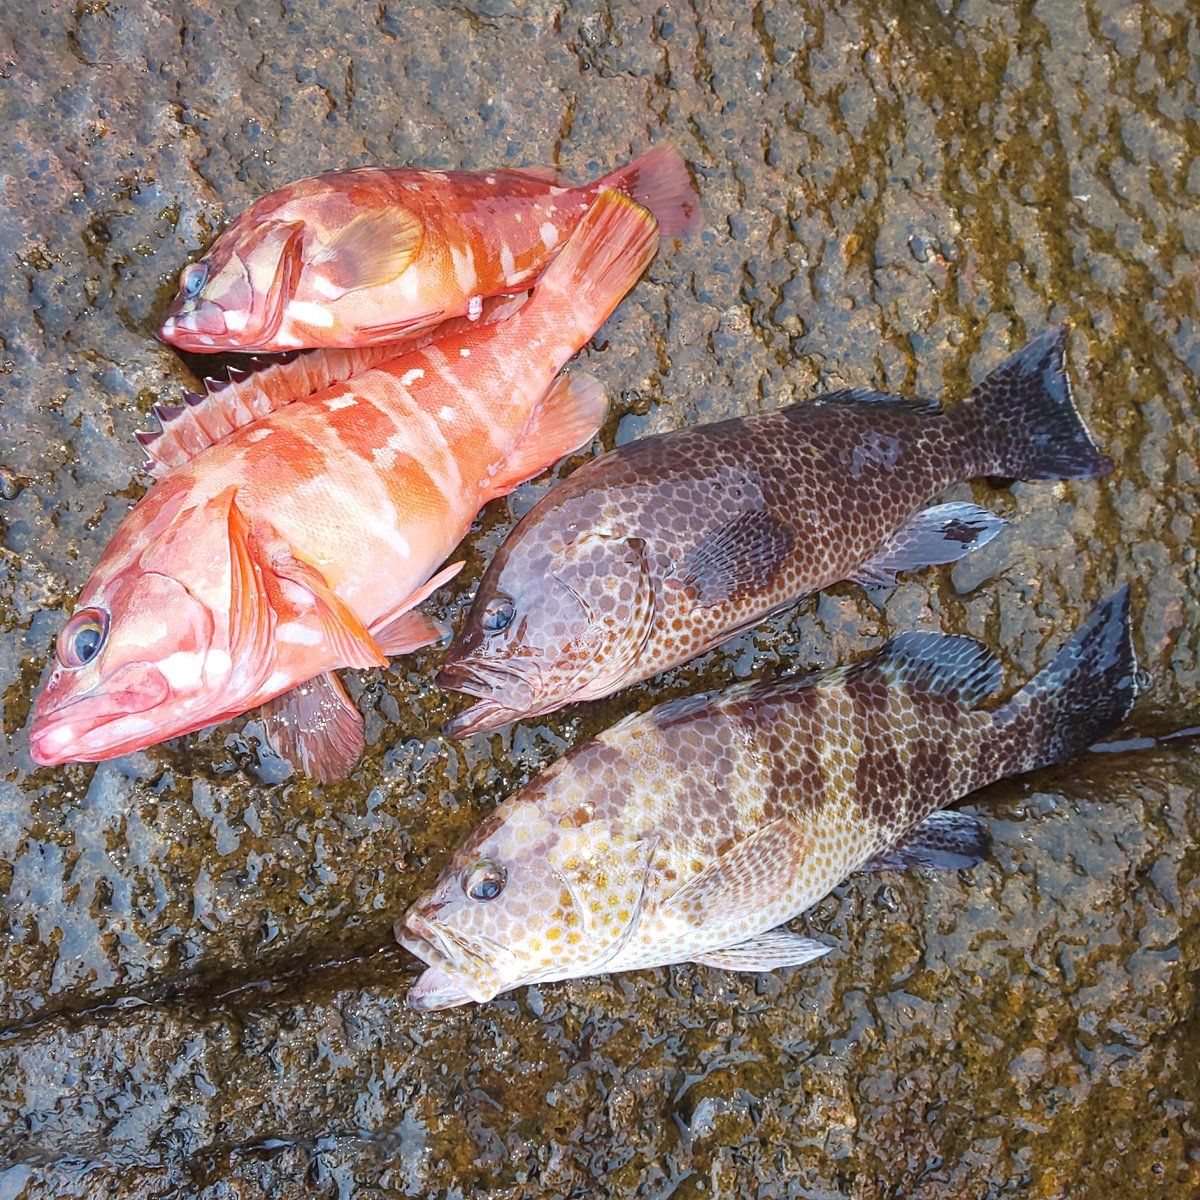 オオモンハタとアカハタに出会えた😁✨✨
やっぱり根魚は楽しいな🎣

#オオモンハタ #アカハタ #一誠 #海太郎 #キャラメルシャッド #ジャコバグ #根魚 #地磯 #ロックフィッシュ #グルーパー #ハタゲーム #rockfish #grouper #grouperfishing